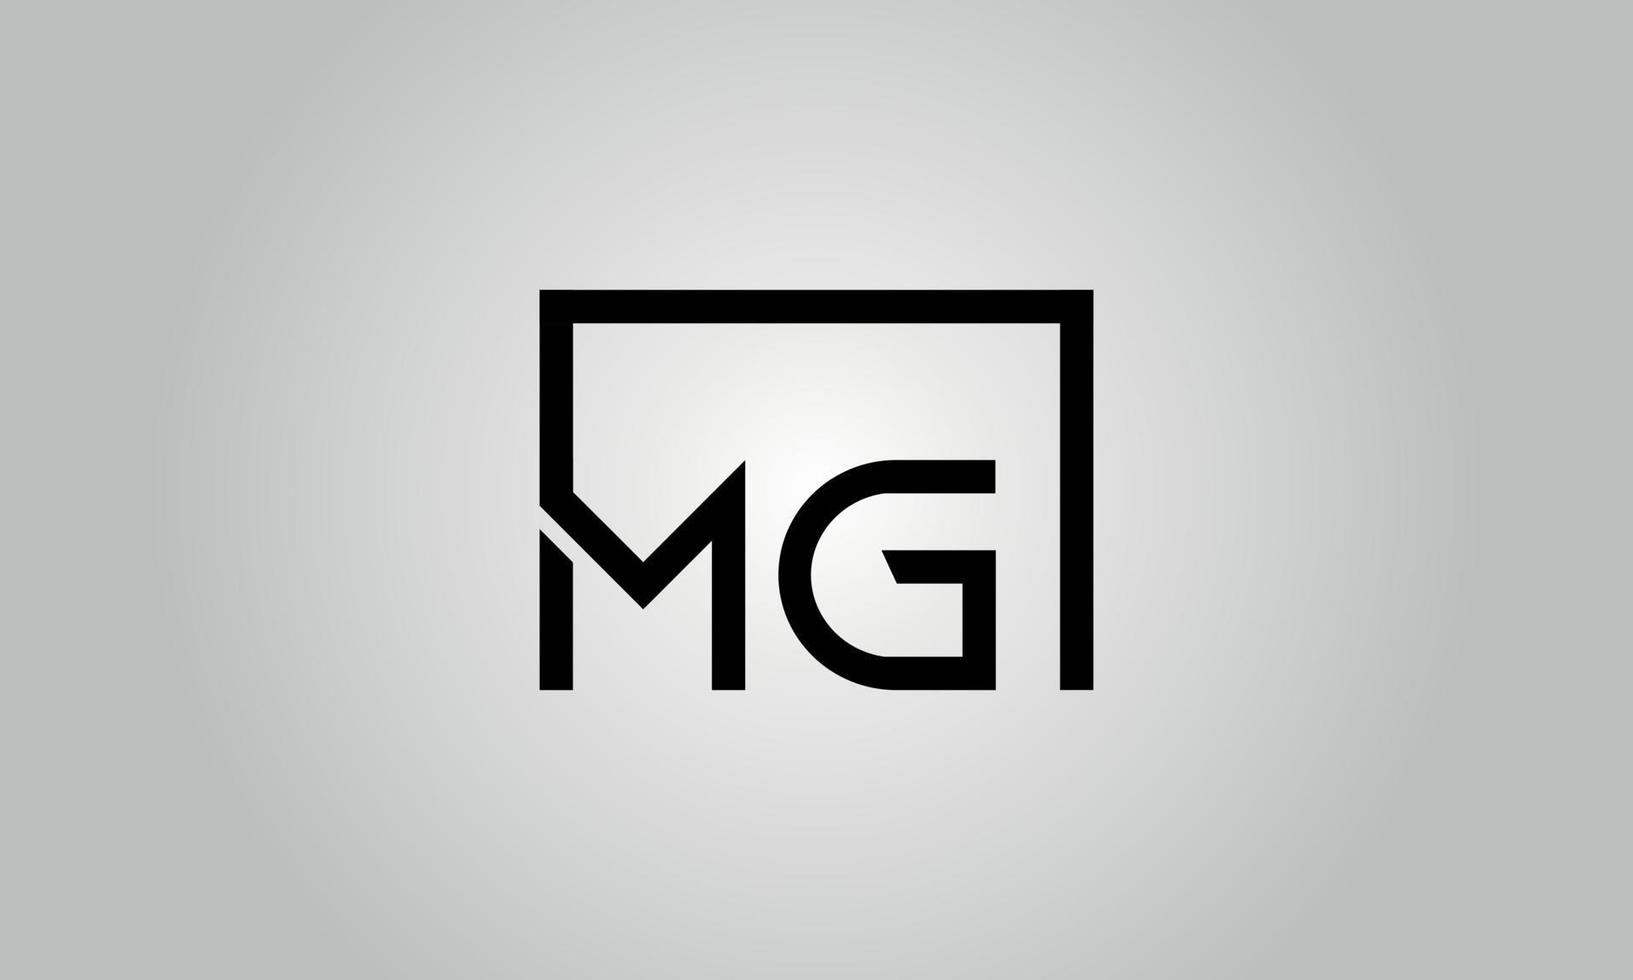 Buchstabe mg Logo-Design. mg-Logo mit quadratischer Form in schwarzen Farben Vektor kostenlose Vektorvorlage.